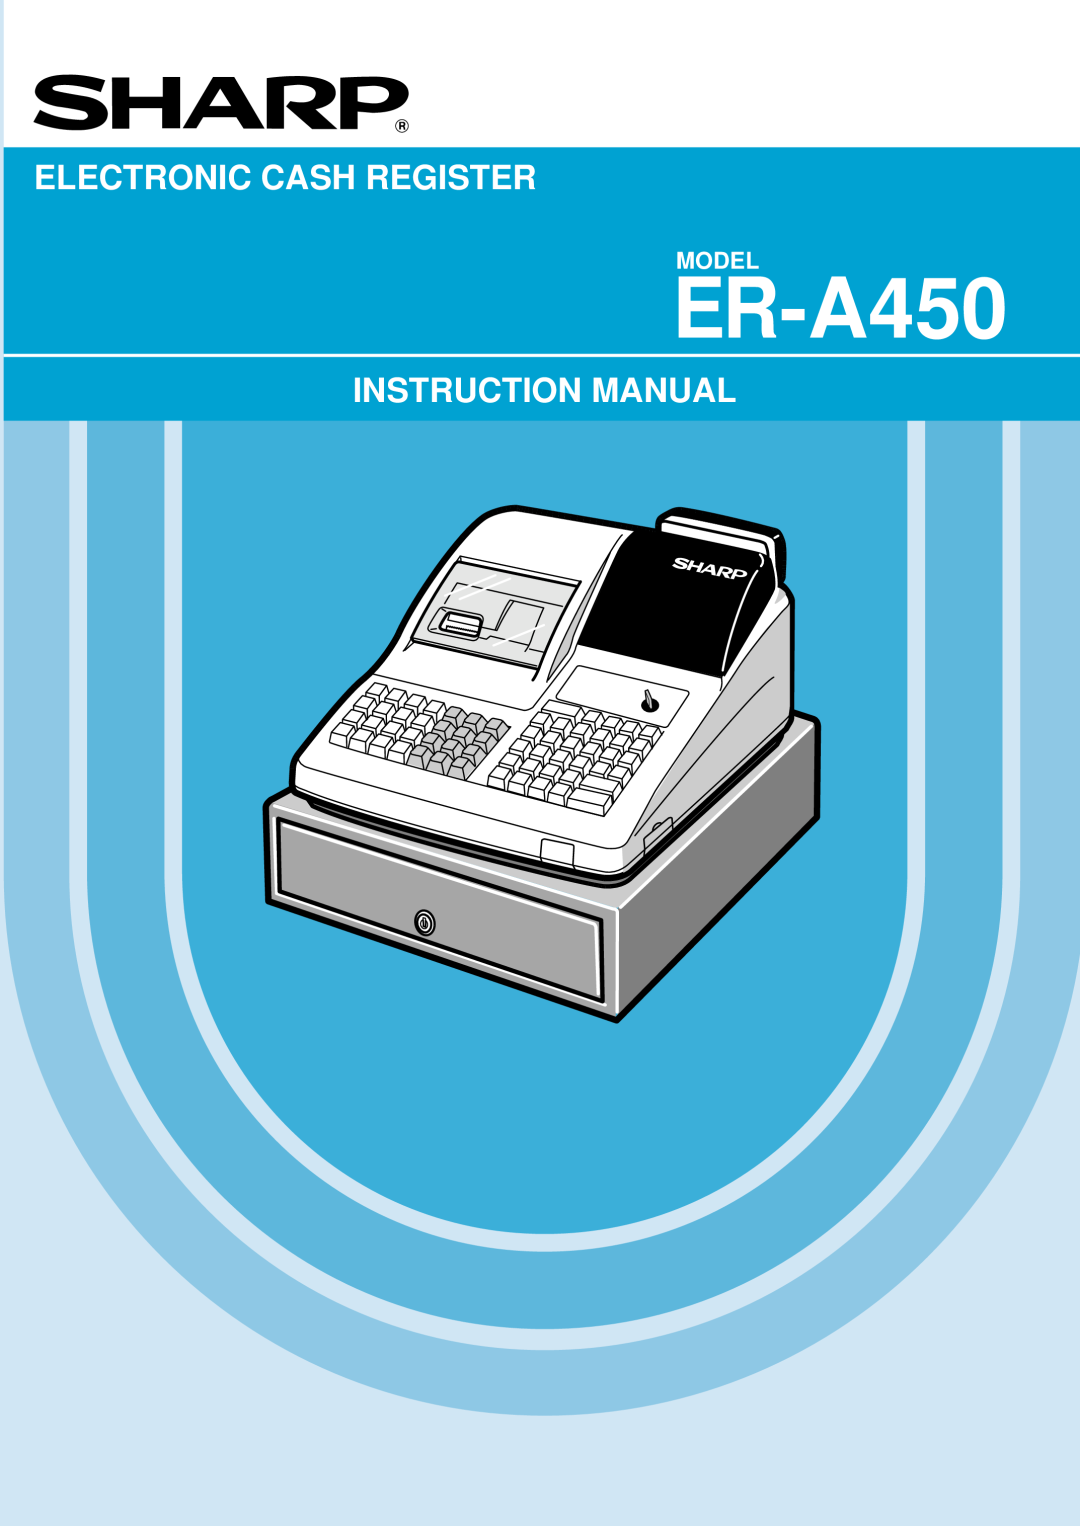 Sharp ER-A450 instruction manual Electronic Cash Register, Model 